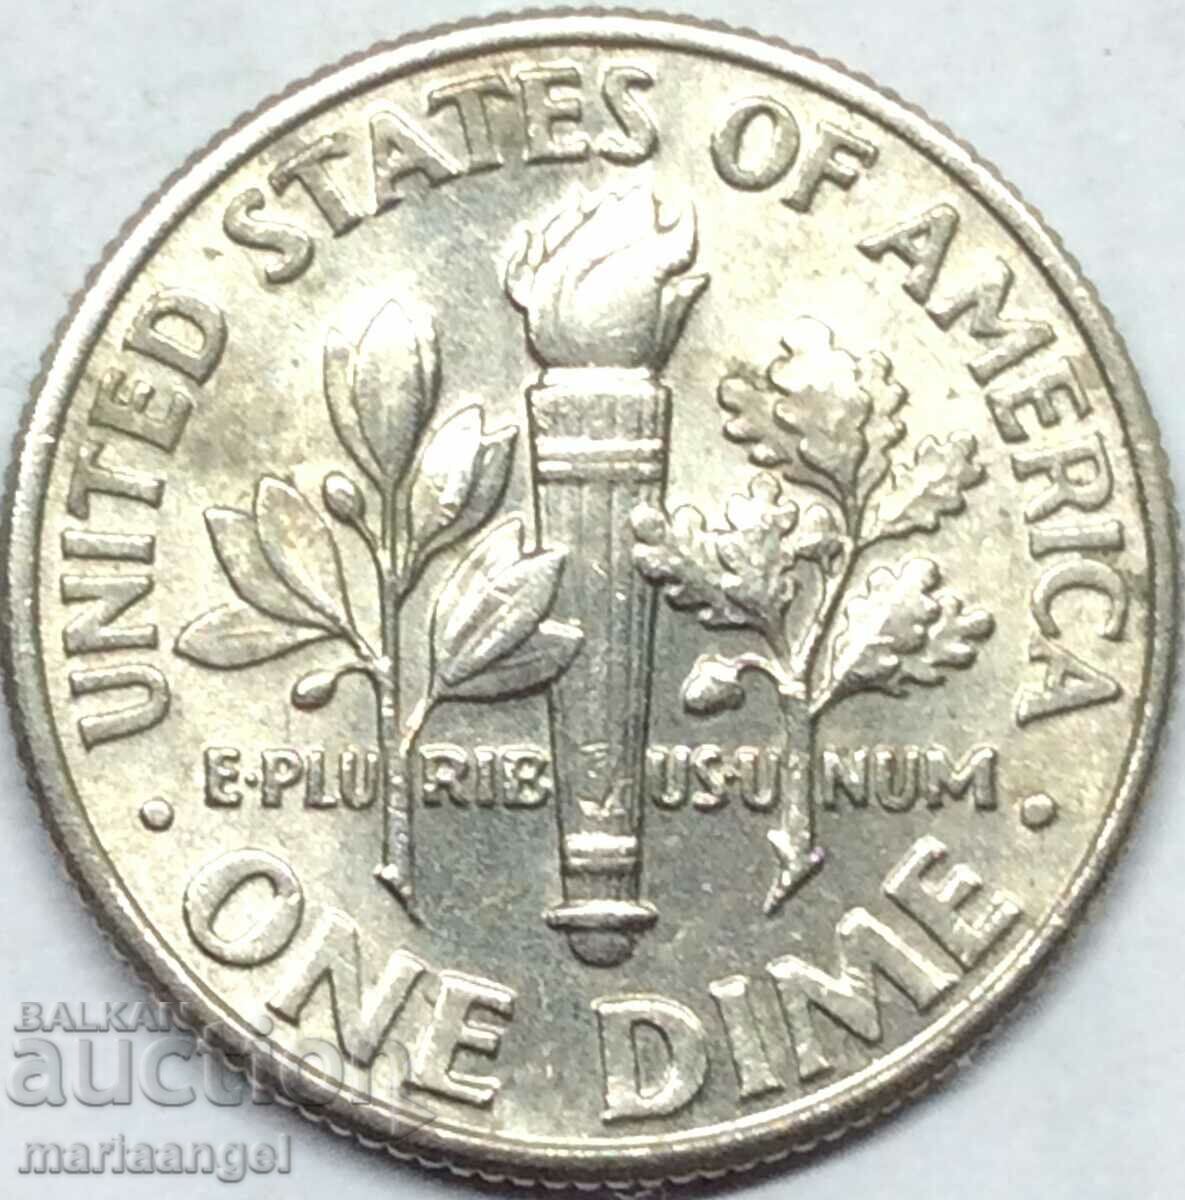 1 δεκάρα 2003 ΗΠΑ 10 σεντς